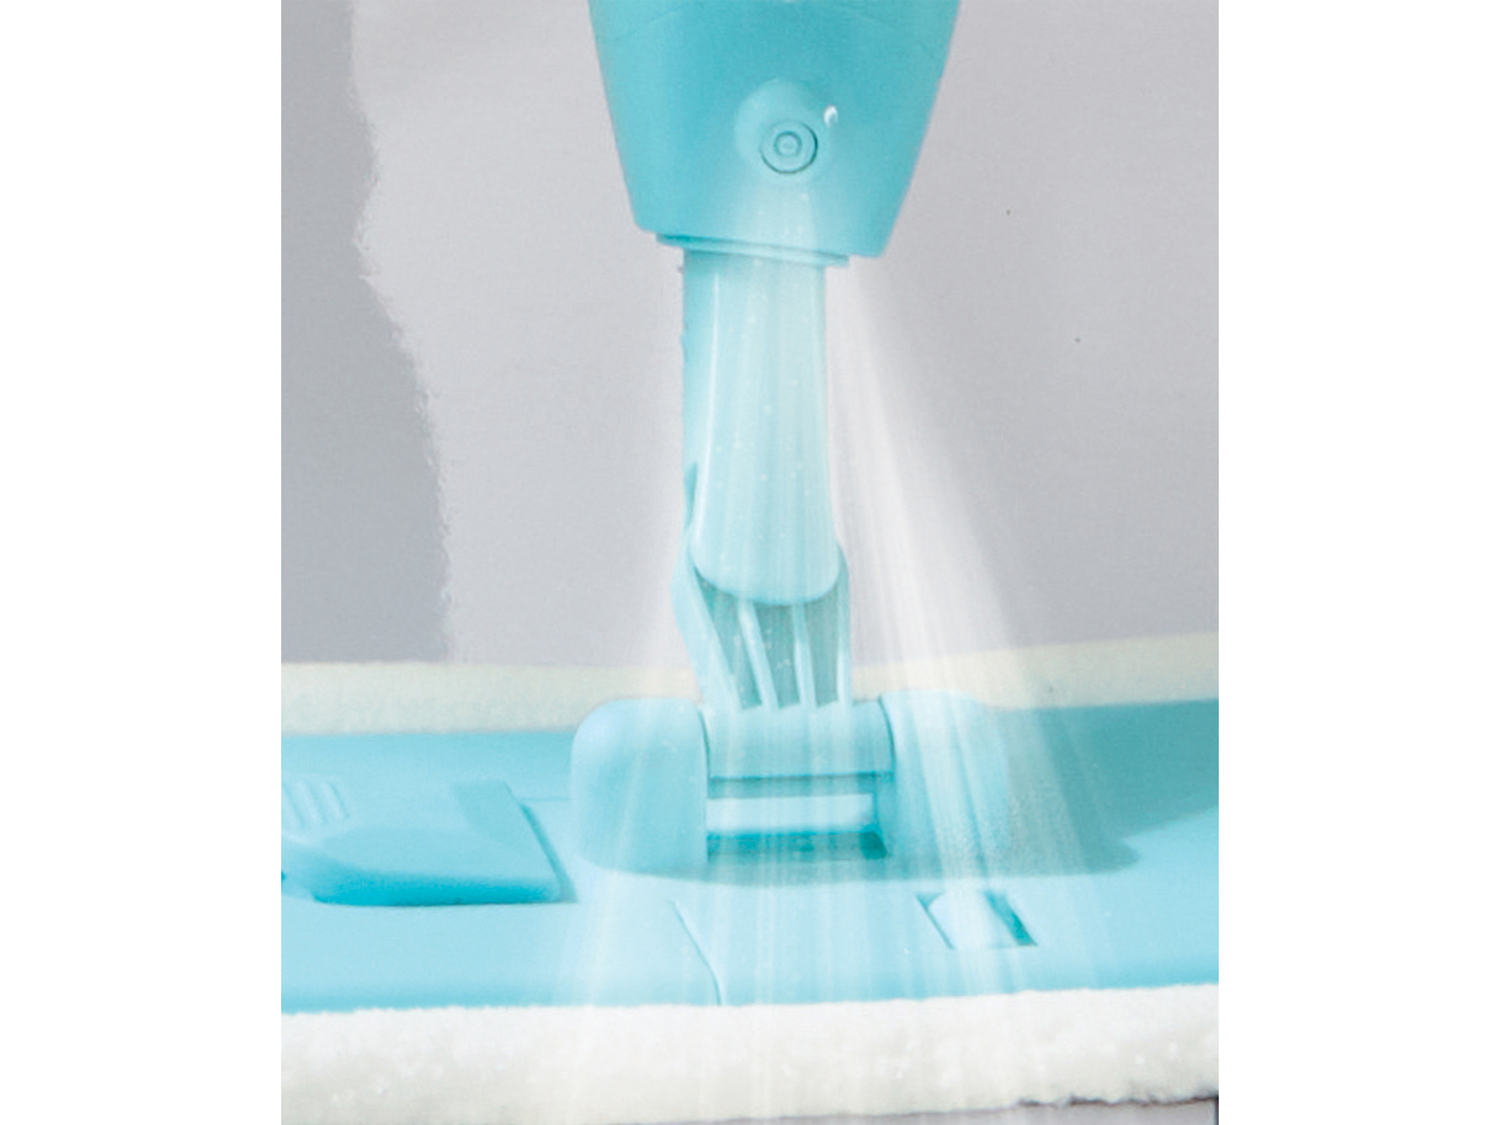 Lavapavimenti AquaPur, prezzo 11.99 € 
- Con funzione spruzzo
- 2 panni inclusi
- ...